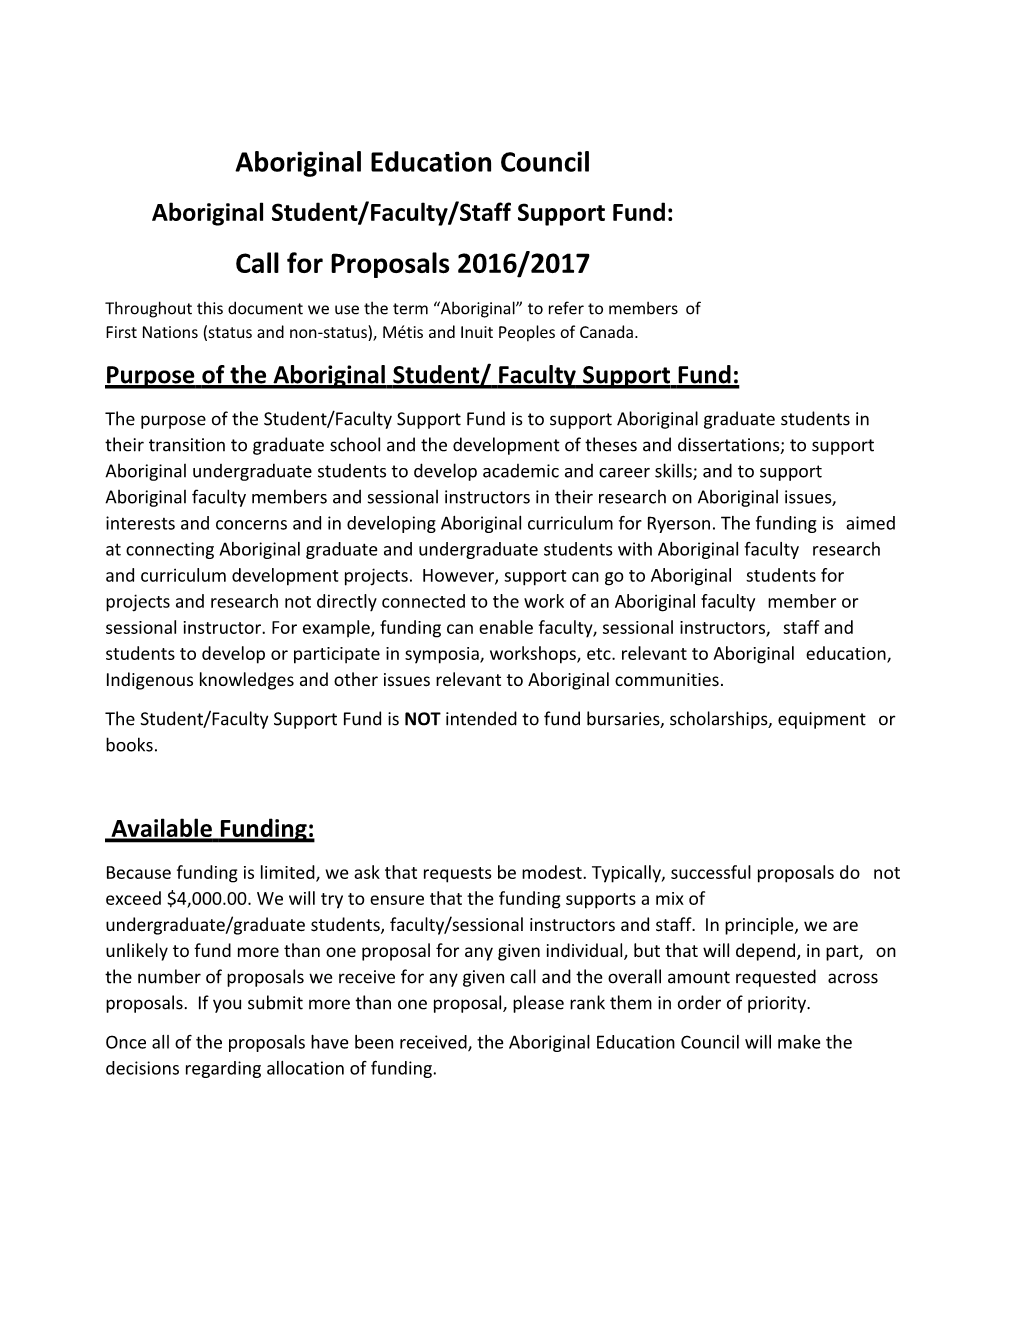 Aboriginalstudent/Faculty/Staffsupportfund